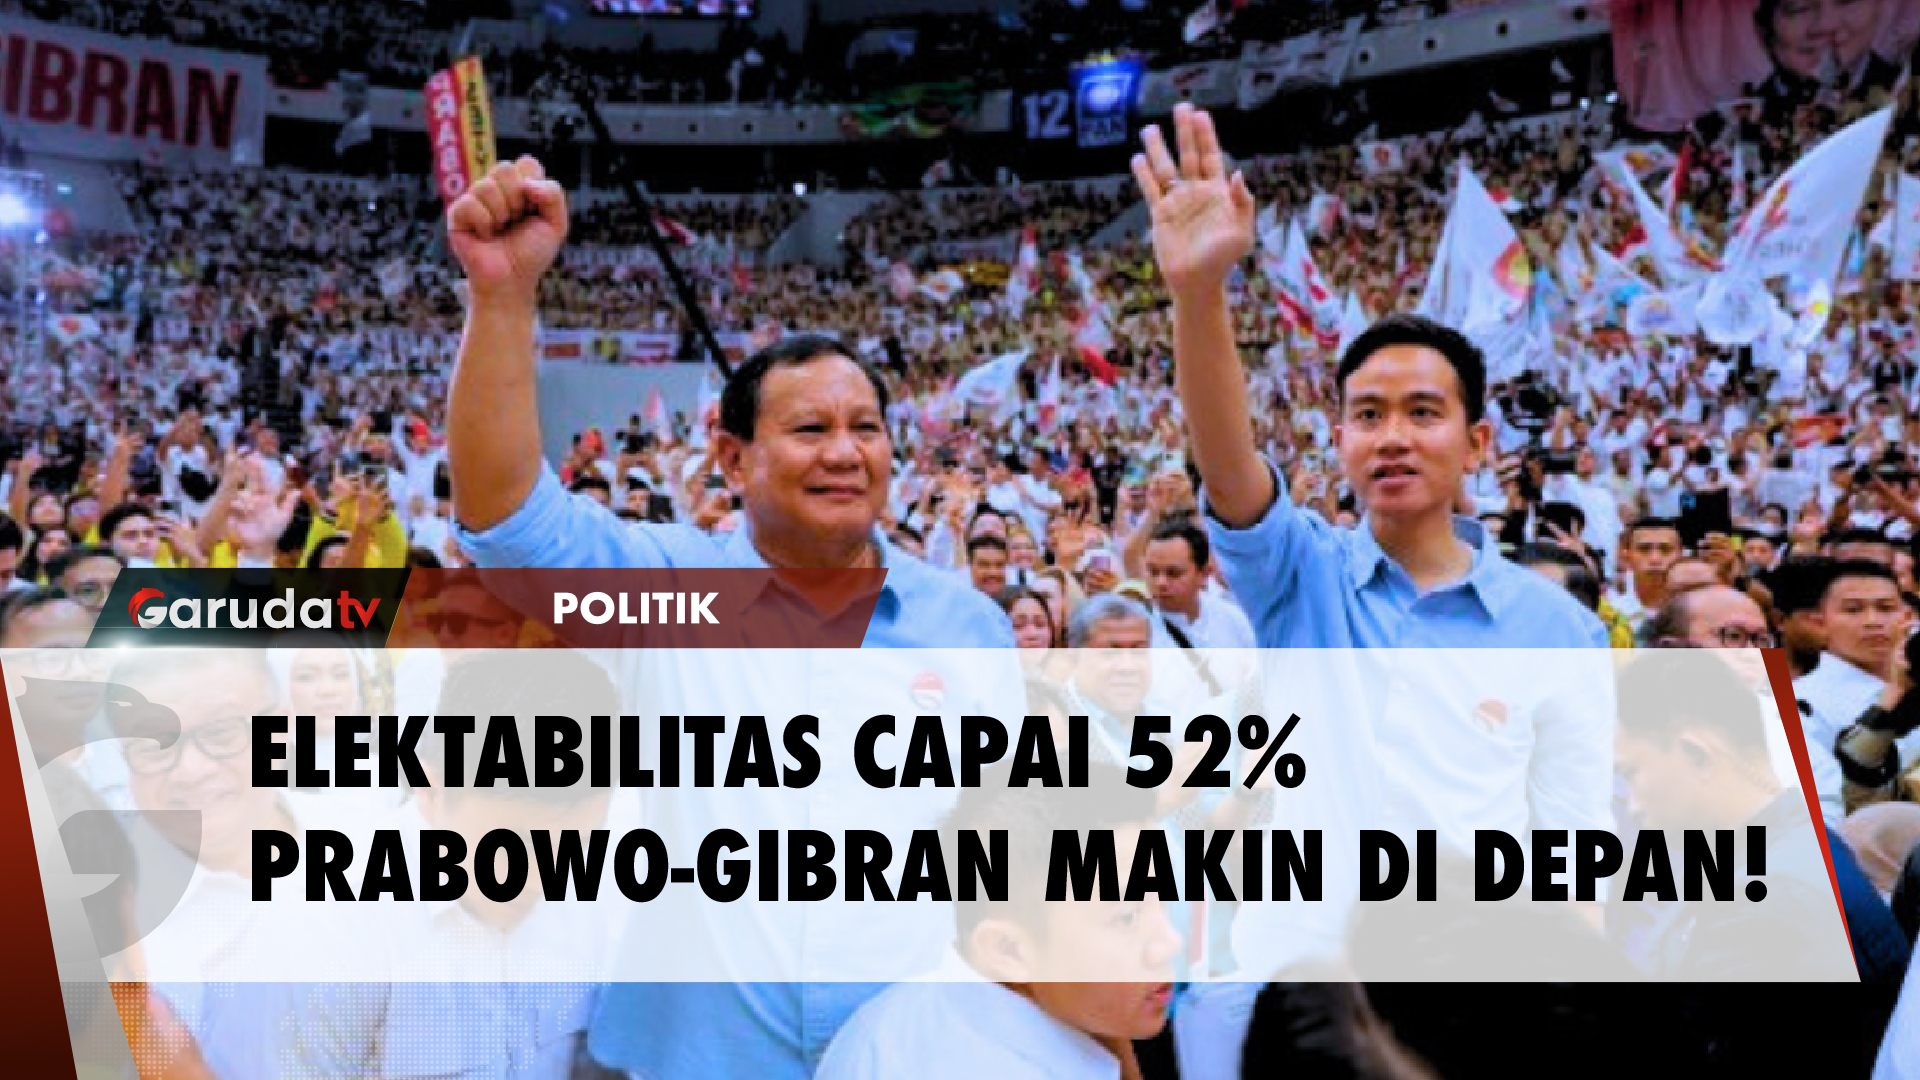 Survei Point Indonesia: Prabowo - Gibran Berpotensi Menang 1 Putaran!